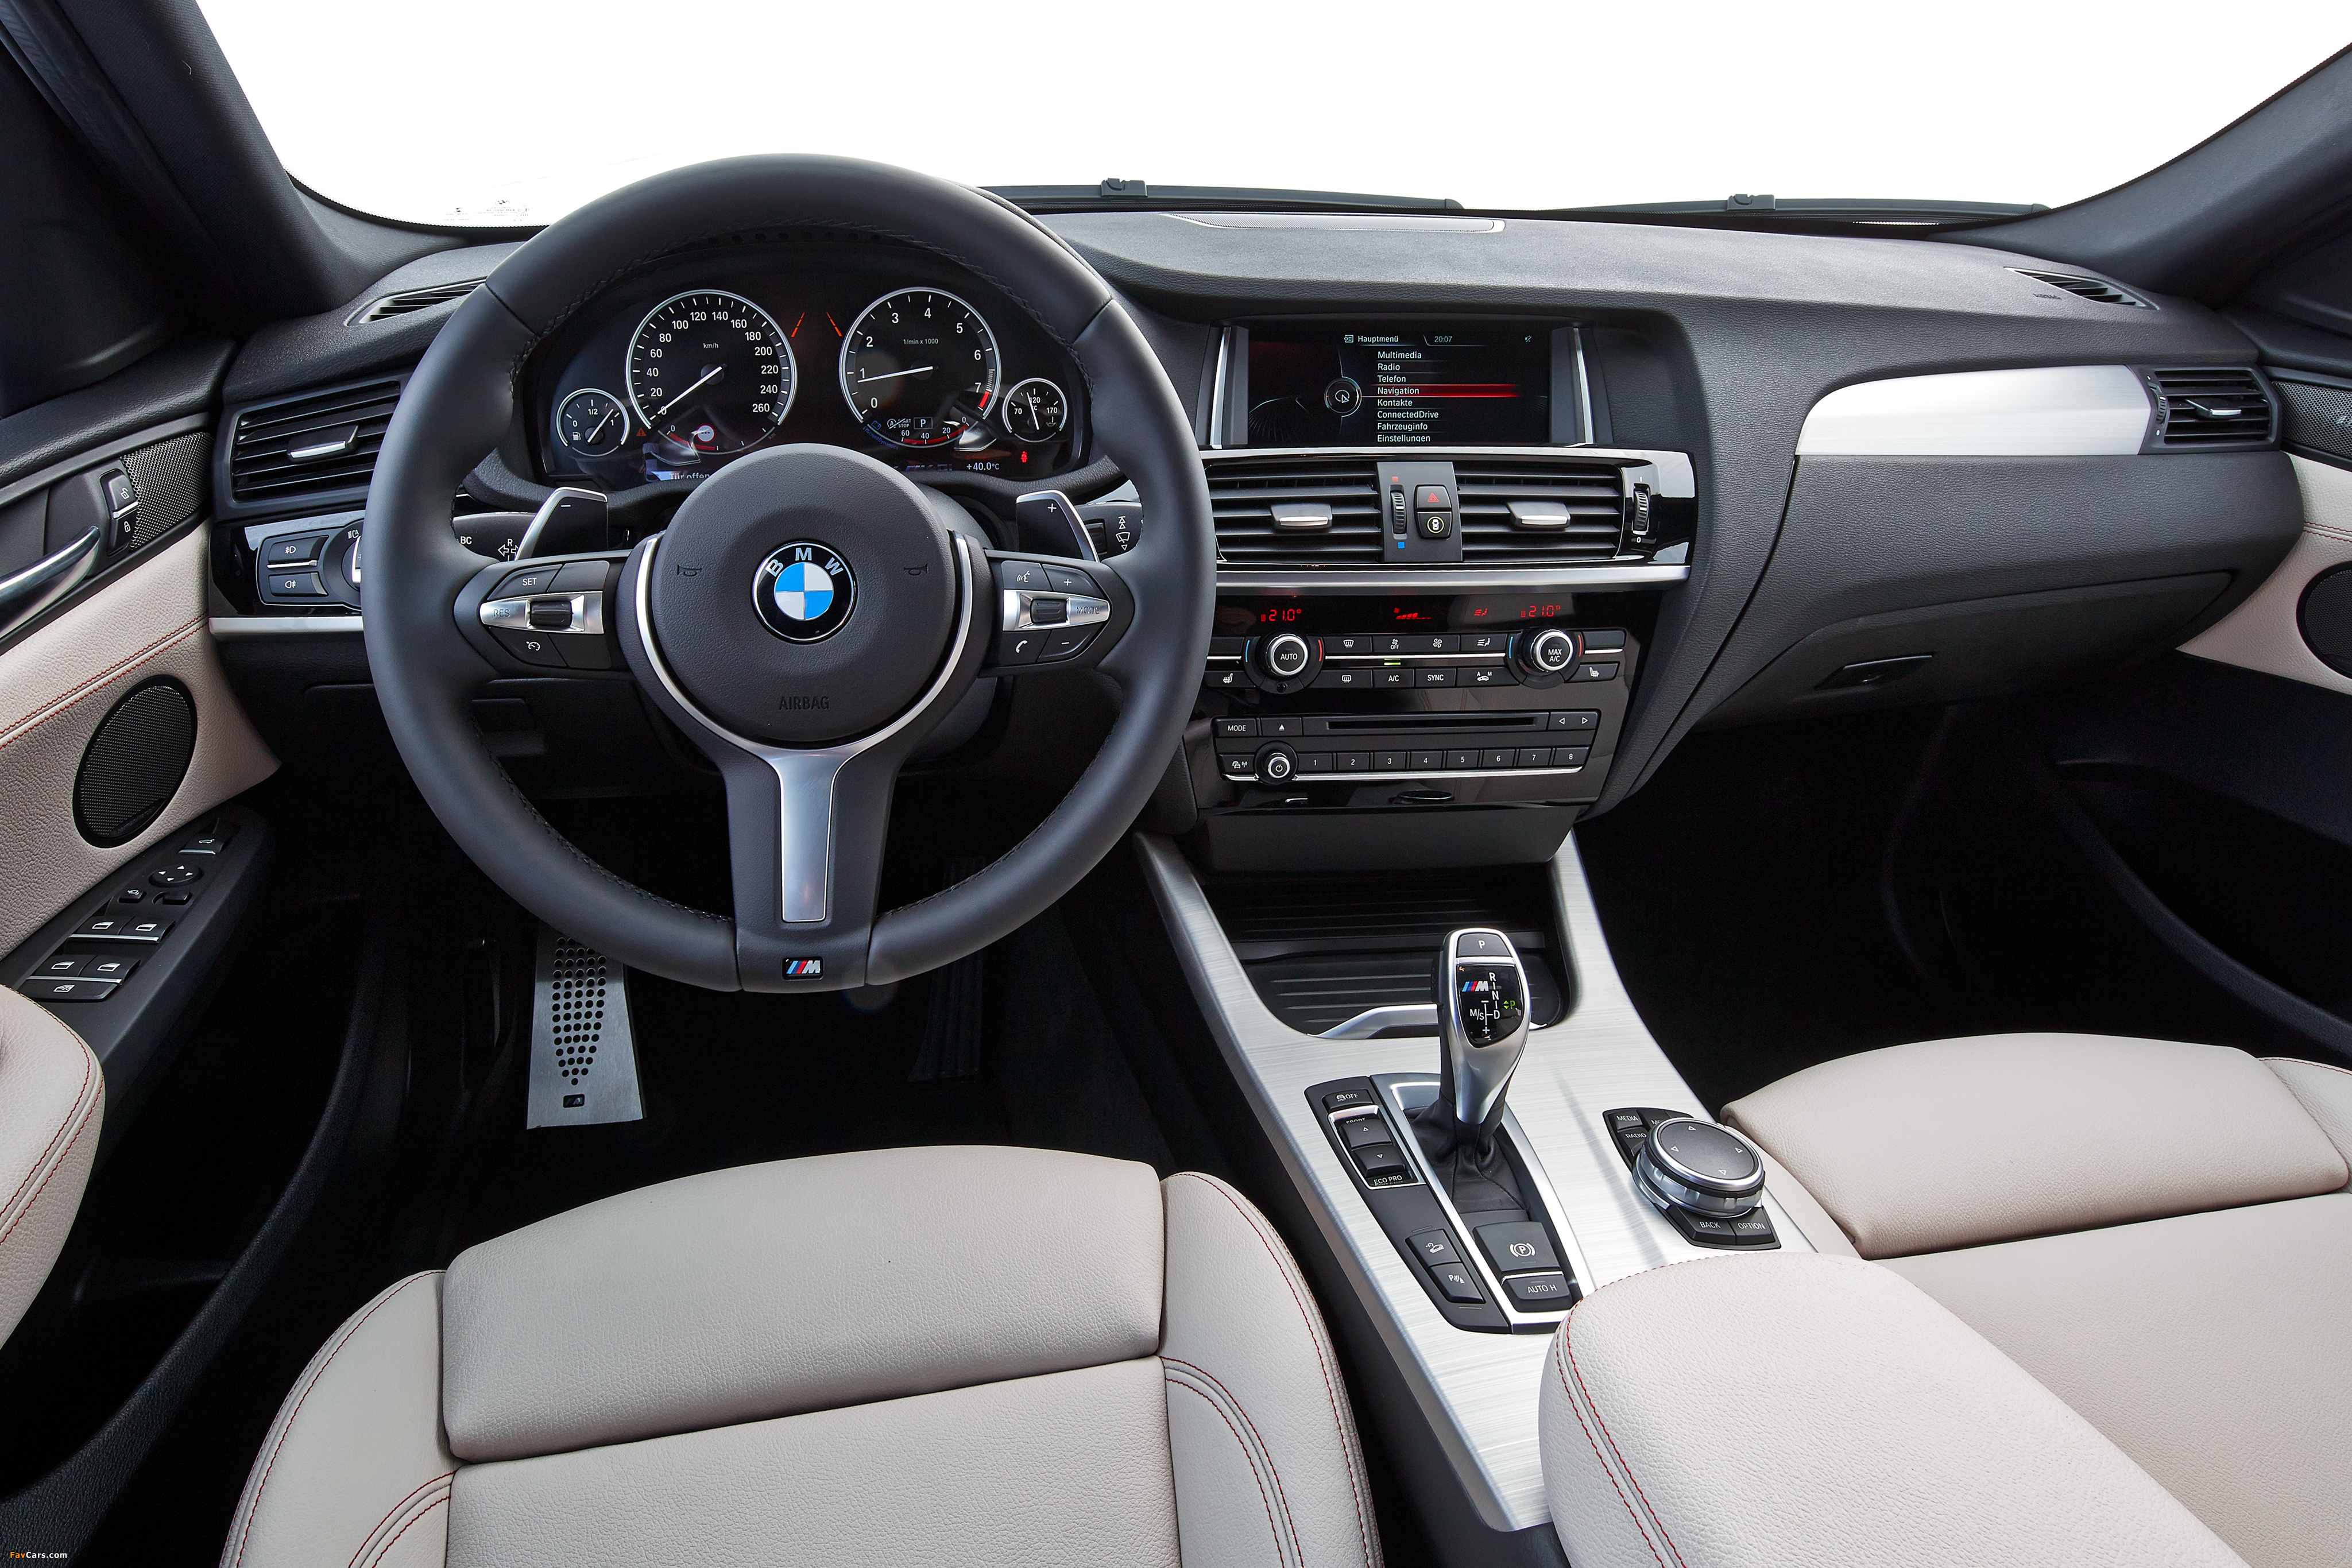 BMW X4 M40i (F26) 2015 photos (4096 x 2731)